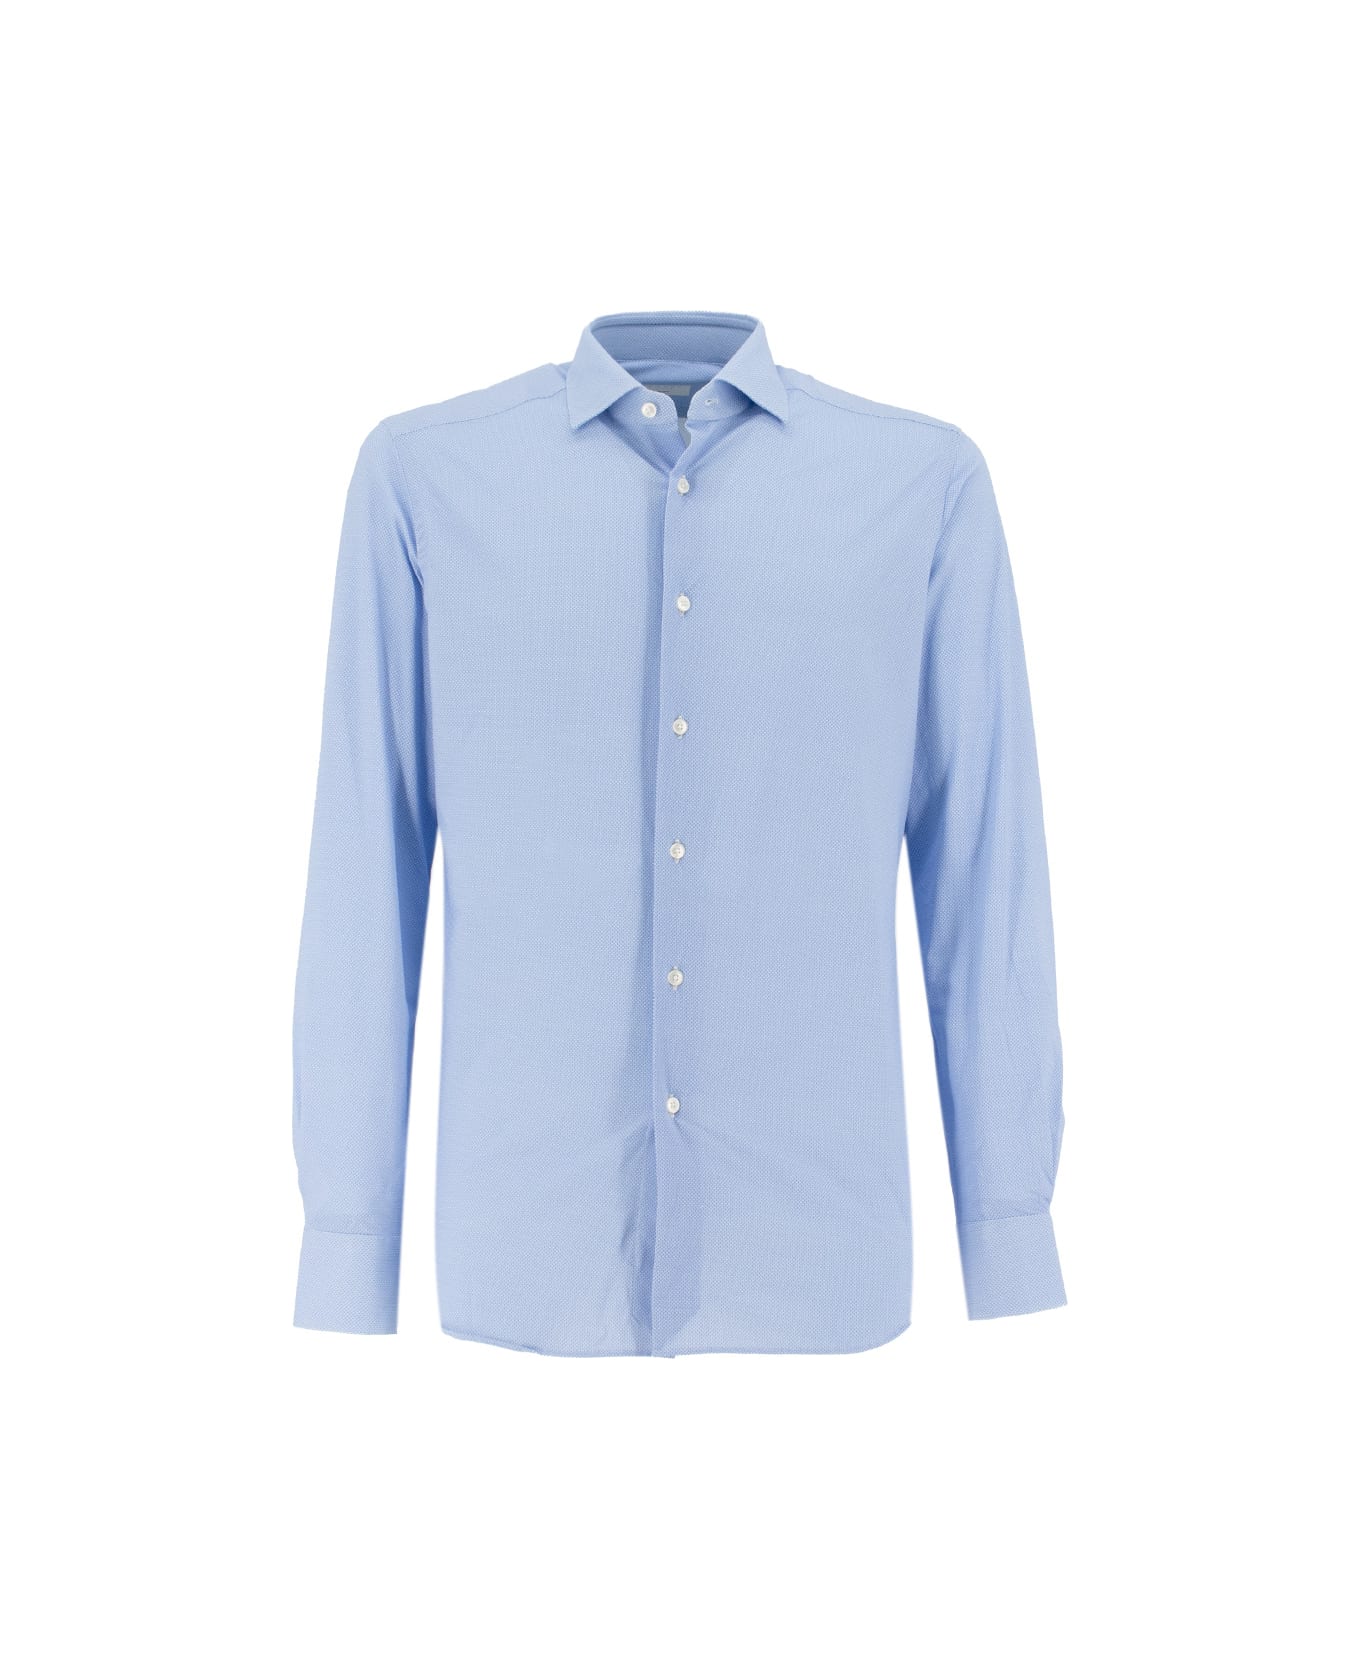 Xacus Shirt - BLUE シャツ